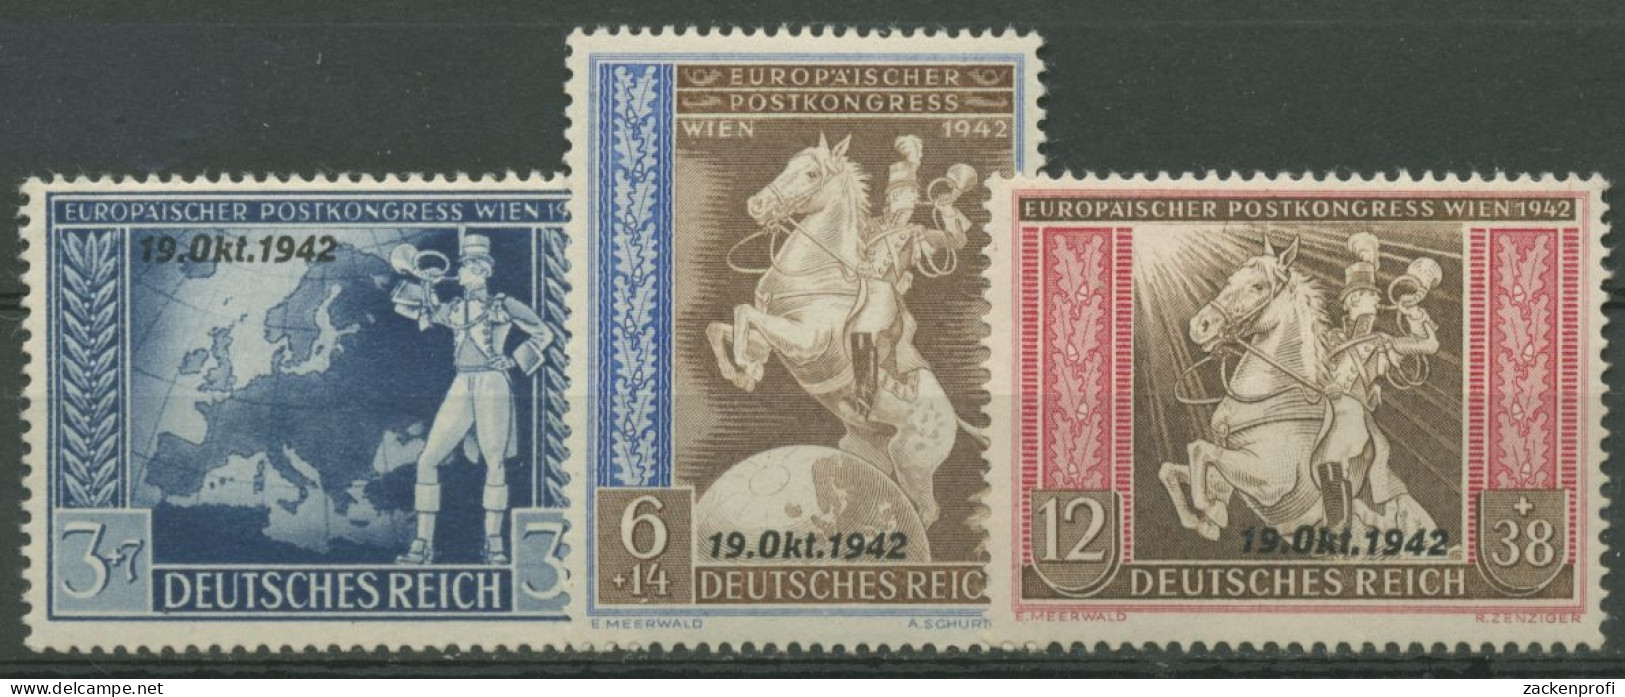 Deutsches Reich 1942 Postkongress Mit Aufdruck 823/25 Mit Falz - Neufs